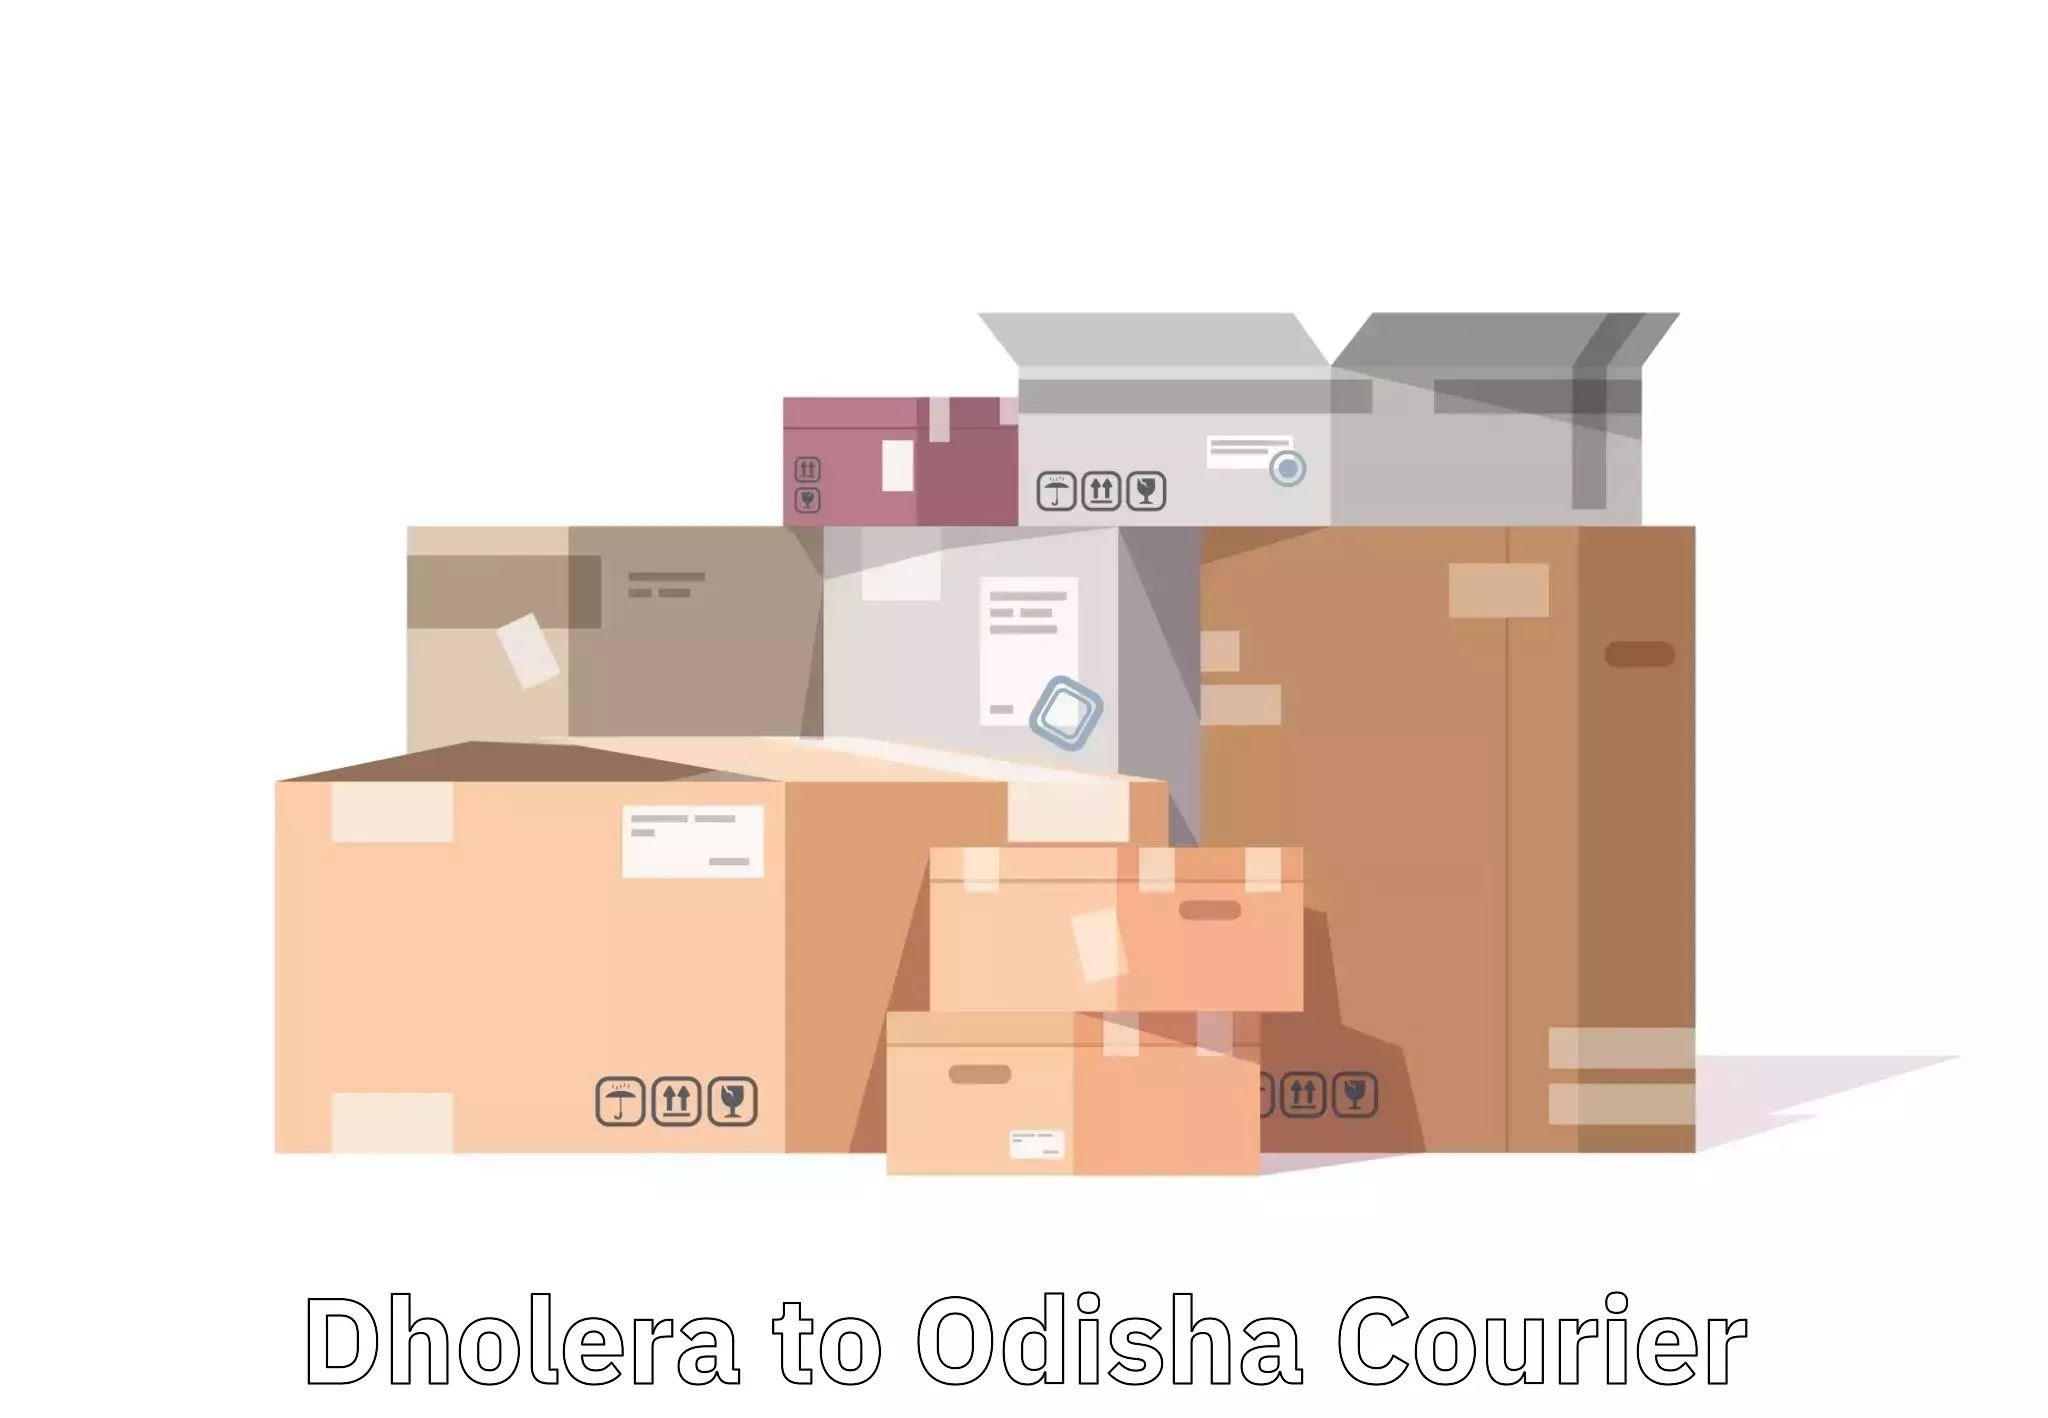 Luggage transport company Dholera to Odisha